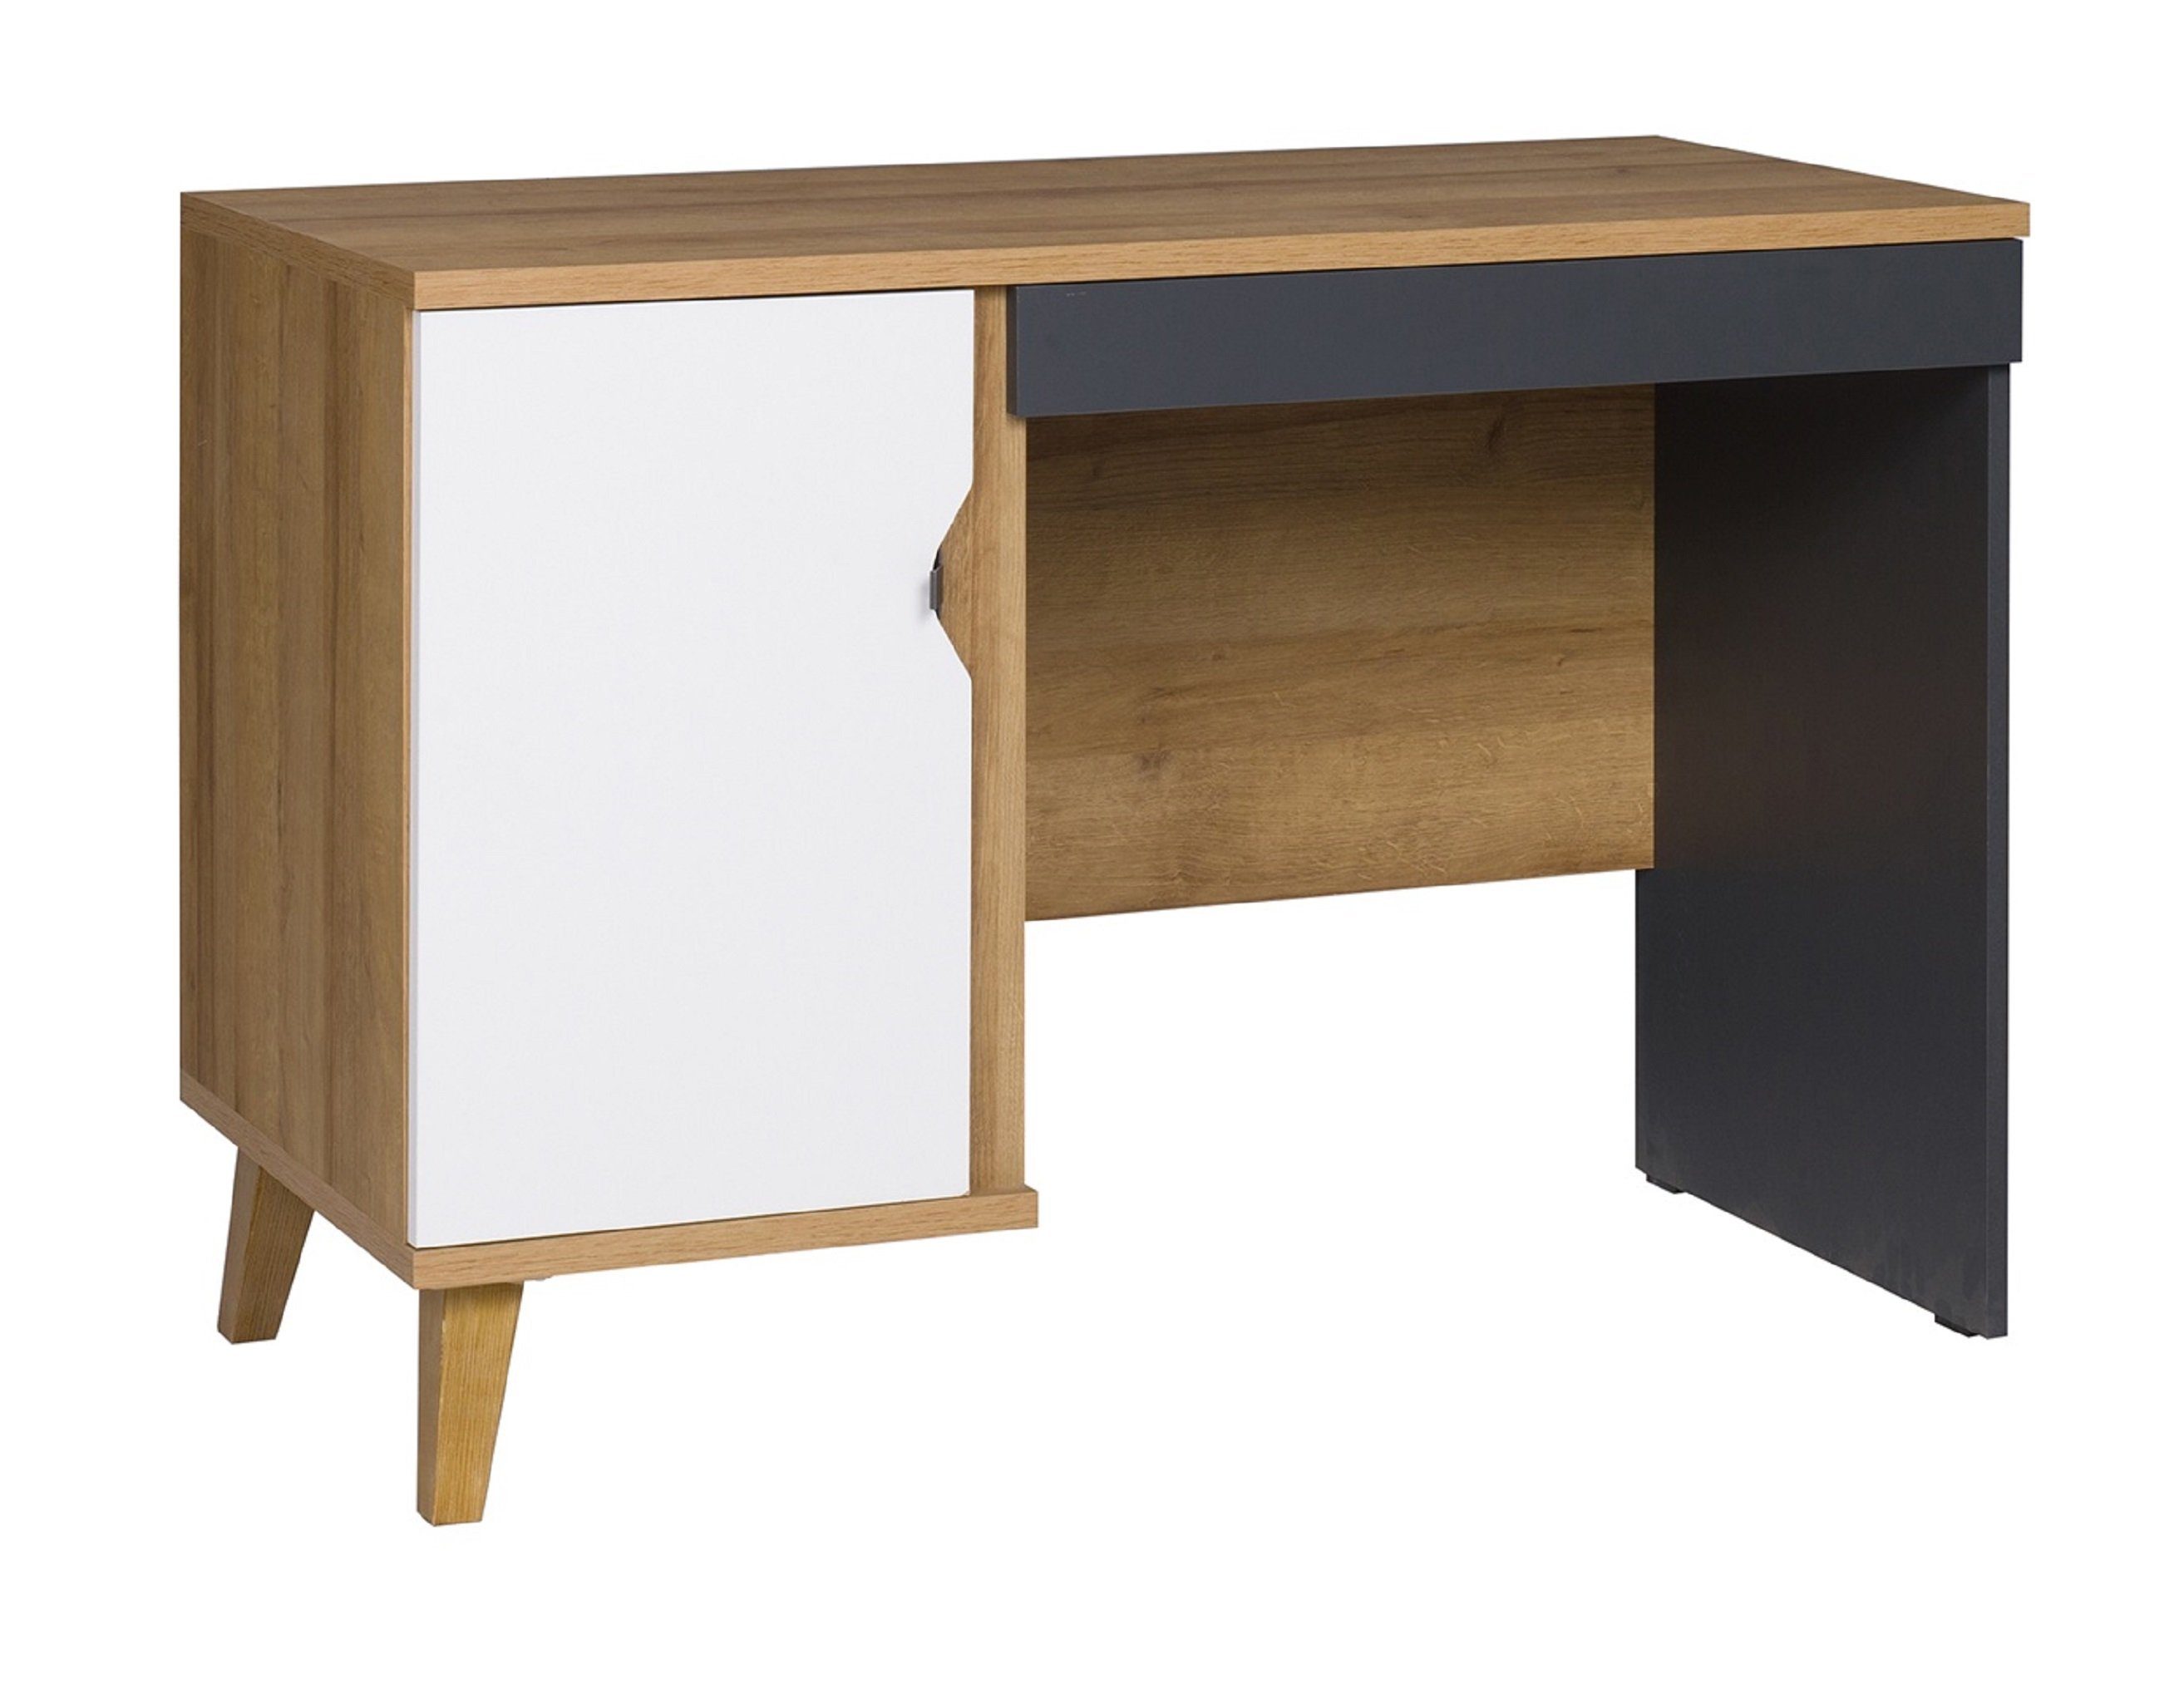 Furnix Schreibtisch MEMIS 110 cm PC-Tisch aus Holz mit Schublade Eiche Gold, B110 x H75 x T50 cm